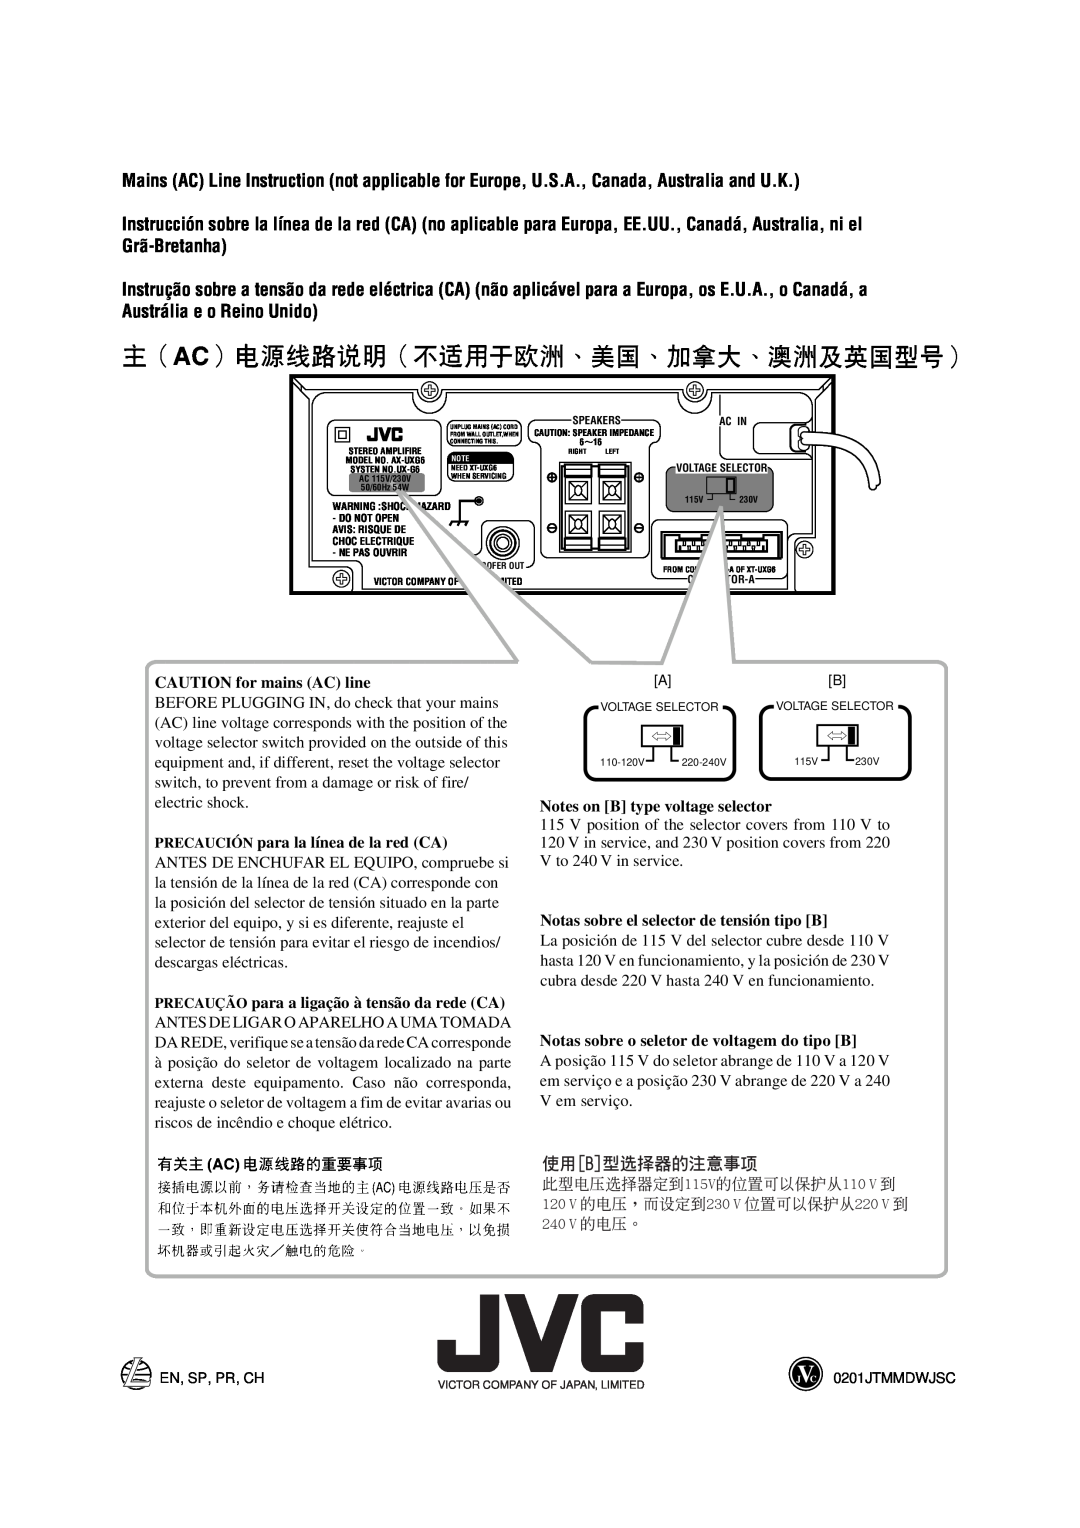 JVC XT-UXG66, TD-UXG66 CAUTION for mains AC line, PRECAUCIÓN para la línea de la red CA, Notes on B type voltage selector 